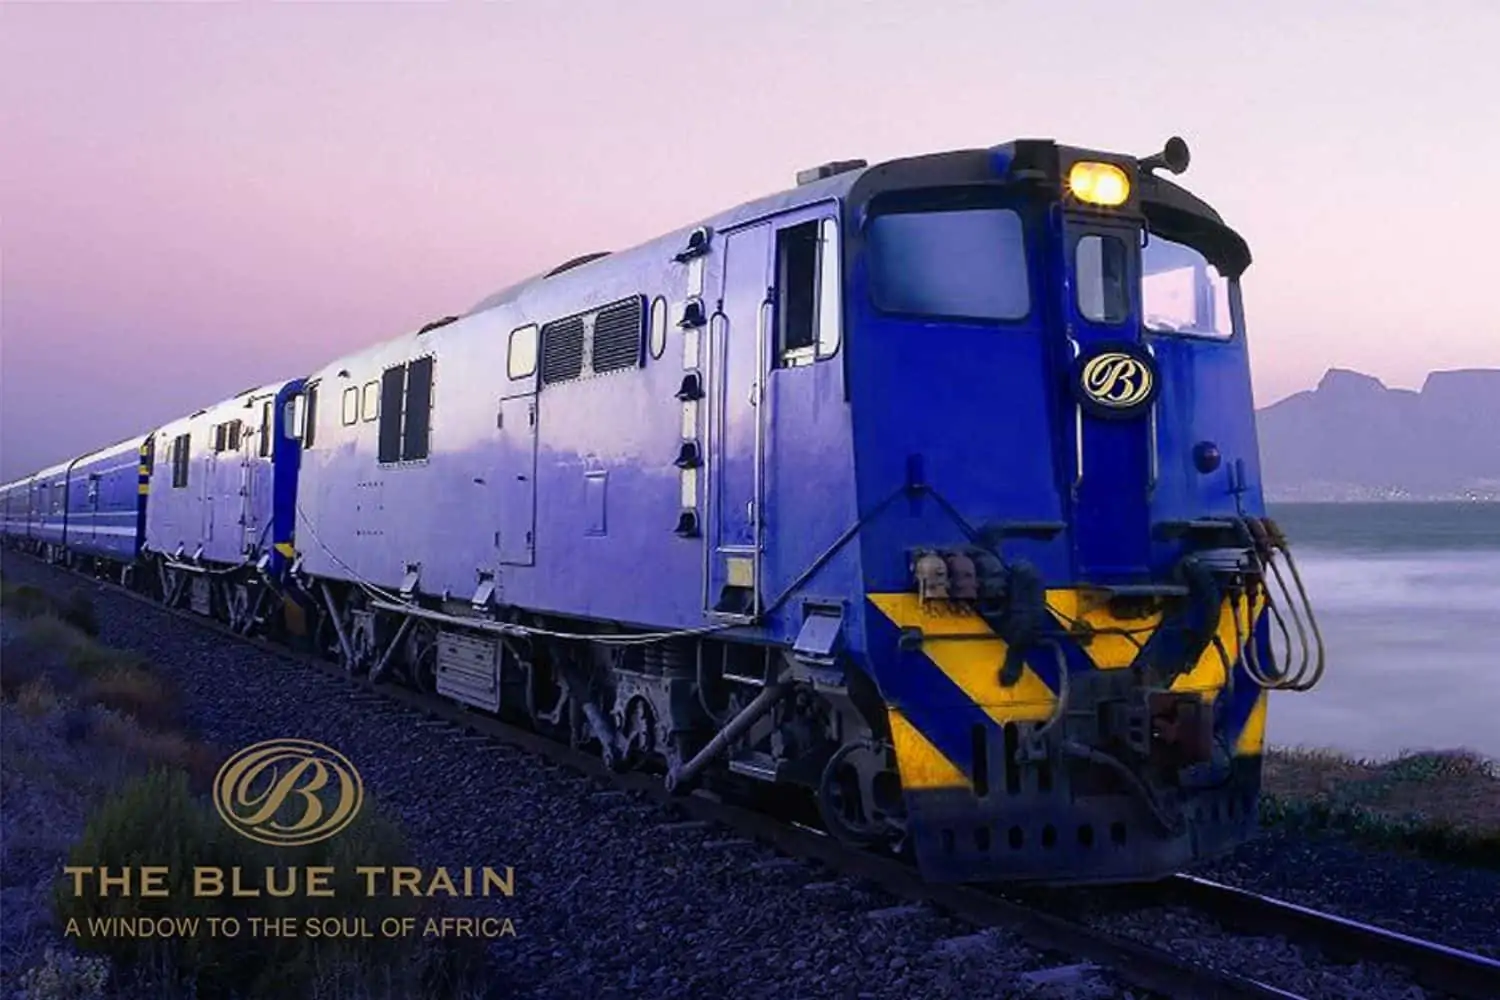 South Africa's famous Blue Train derails